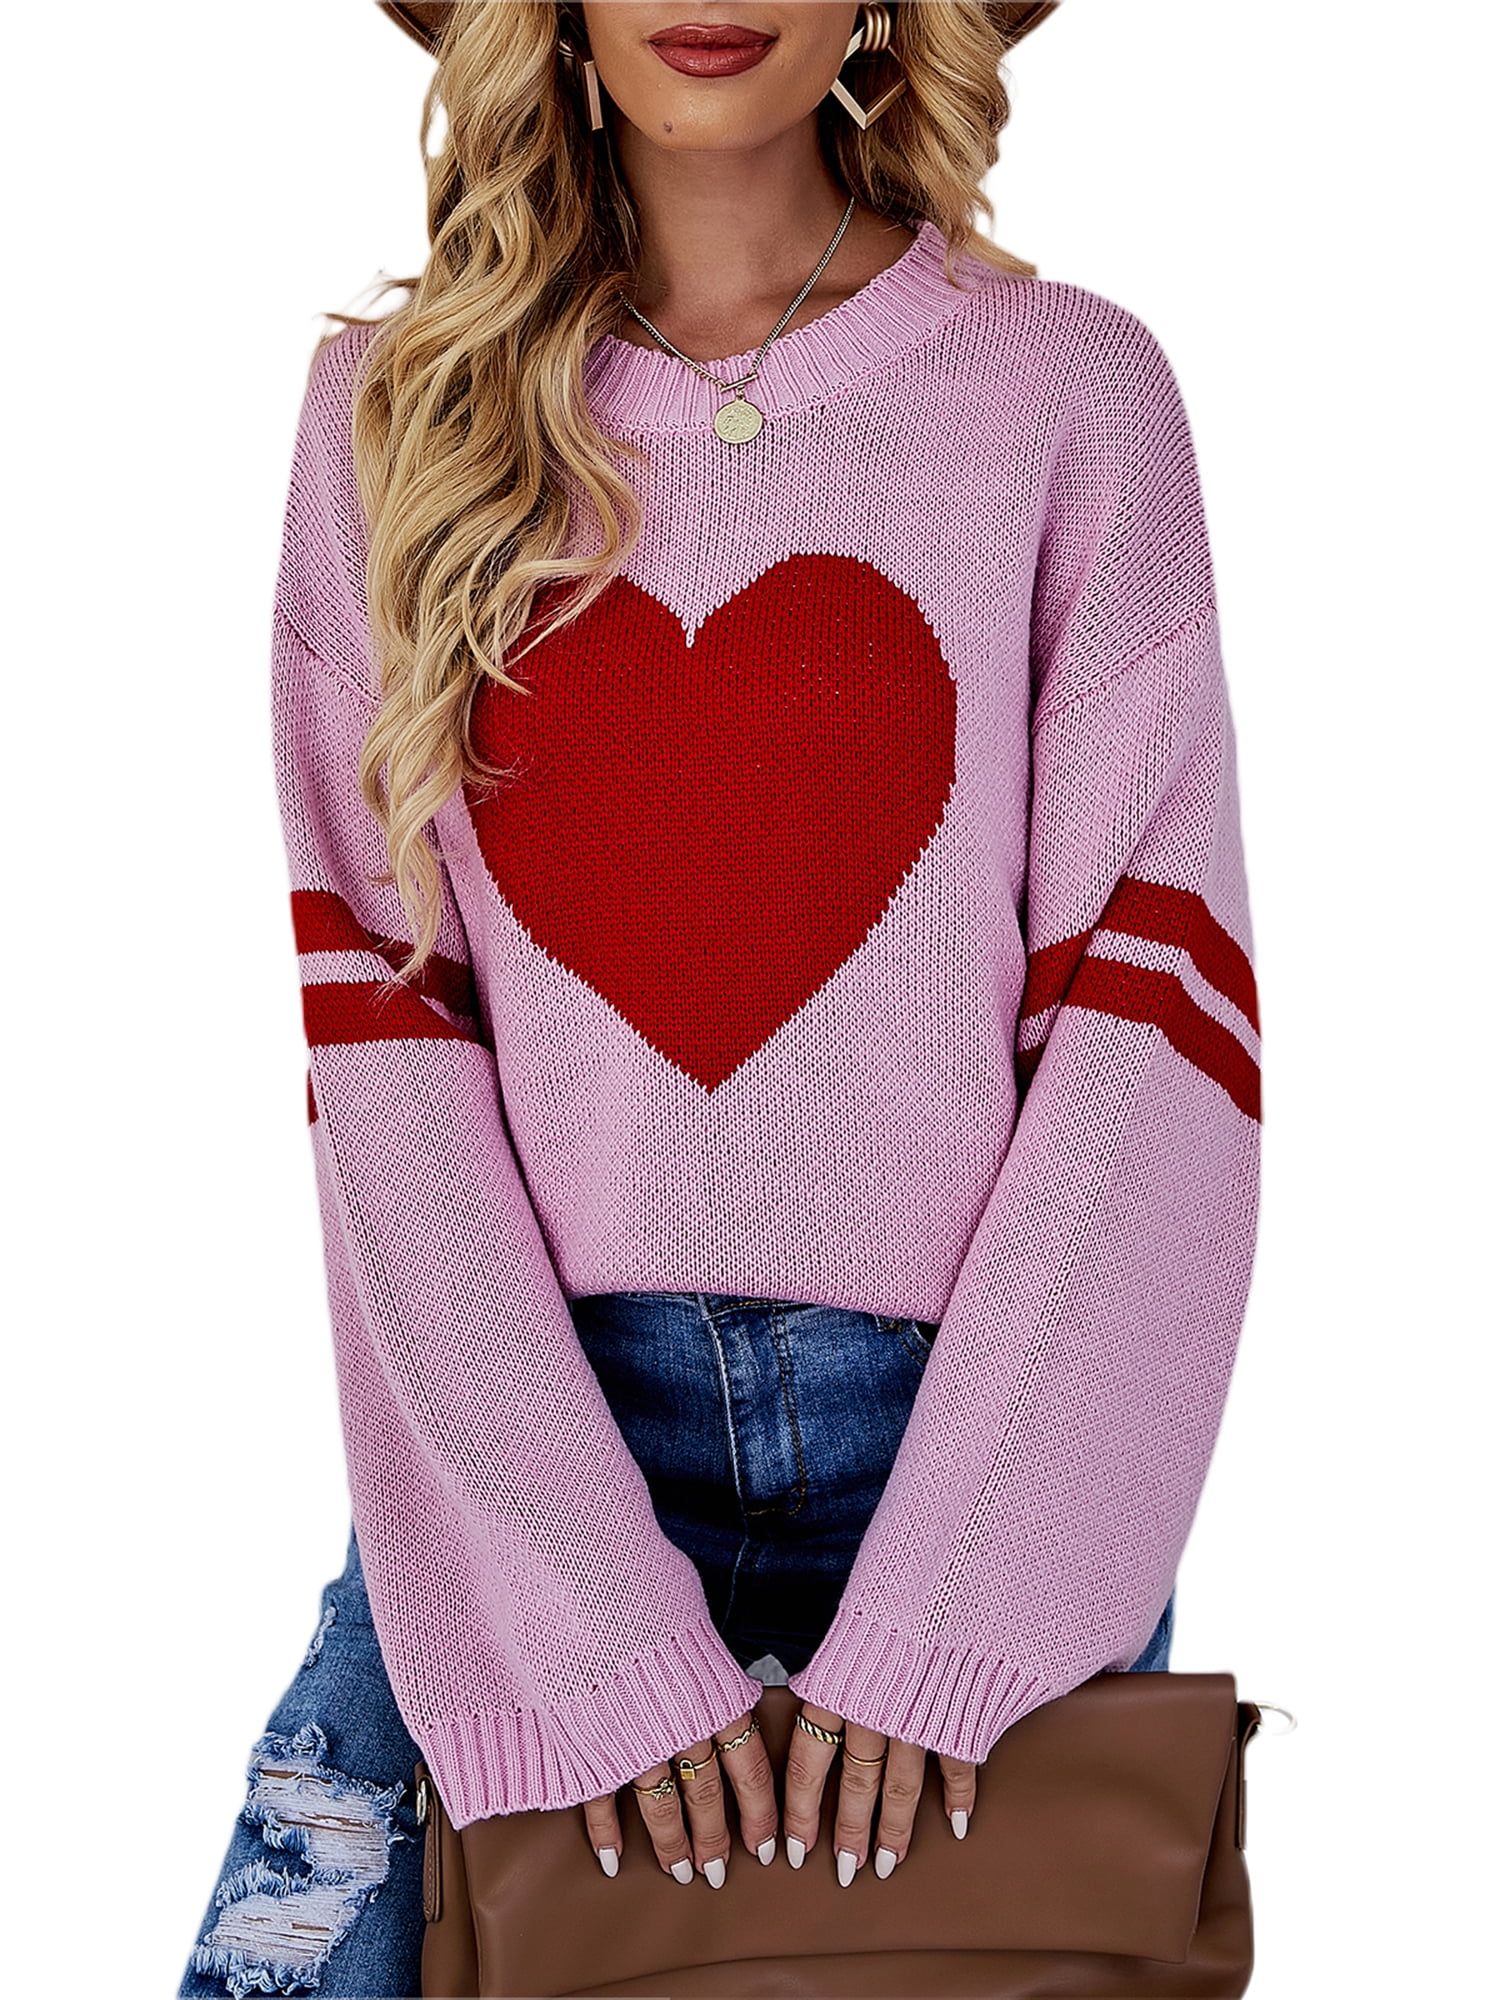 Tregren Women Sweater Valentine 's Day Tops Long Sleeve Knitt Pullover Shirt Knitwear | Walmart (US)